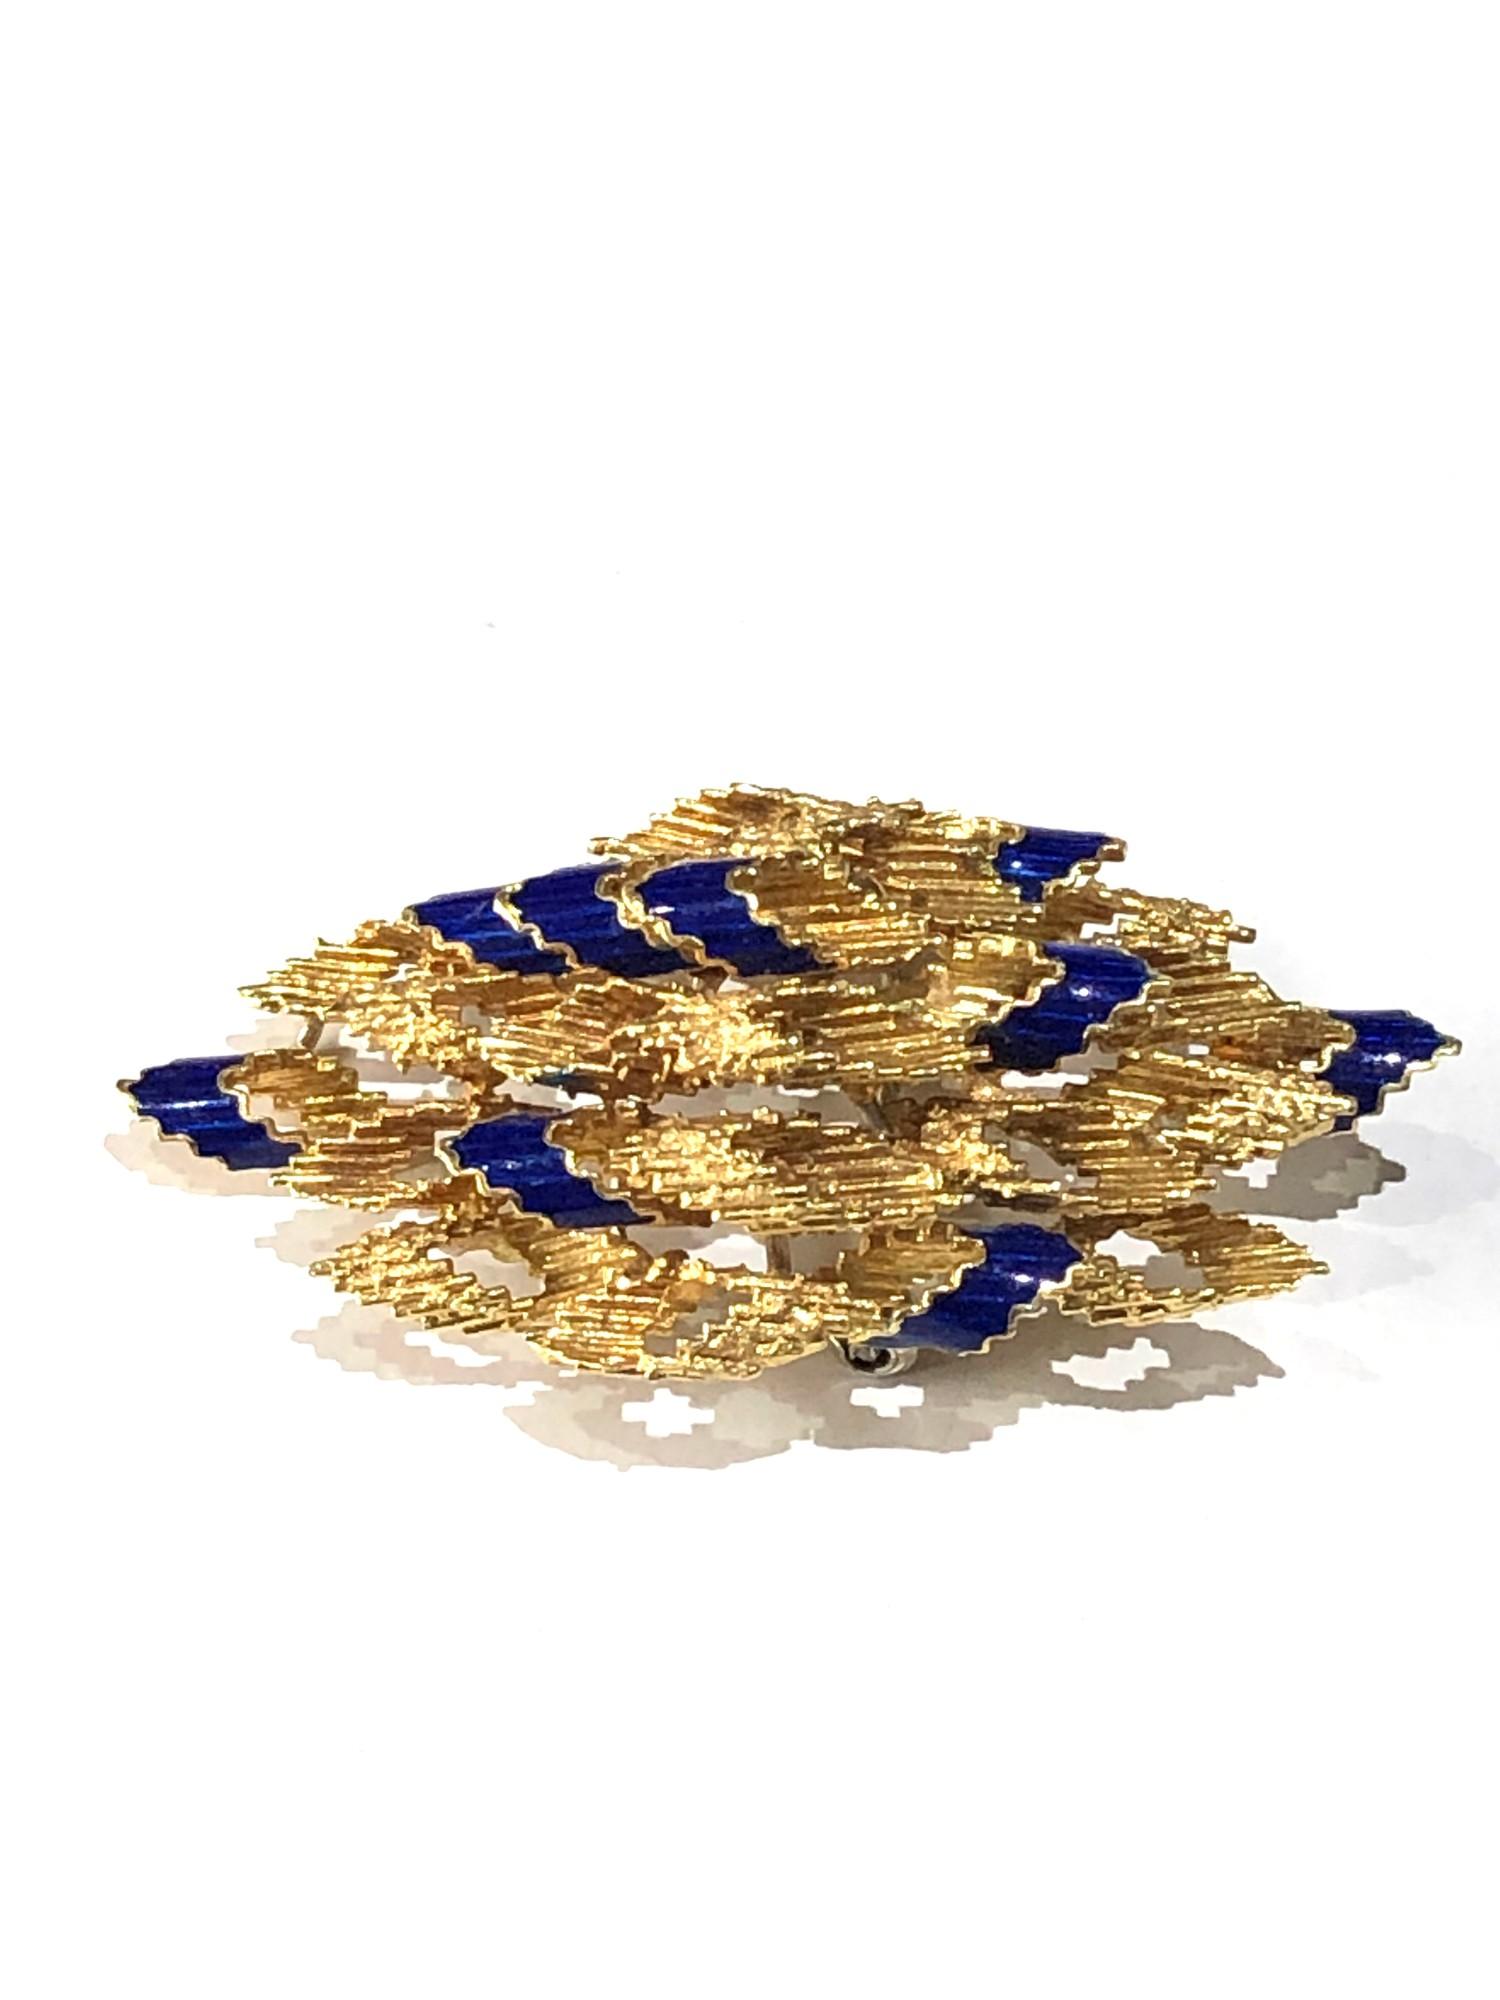 Fine 18ct gold & enamel modernist design brooch weight 13.2g - Image 2 of 3